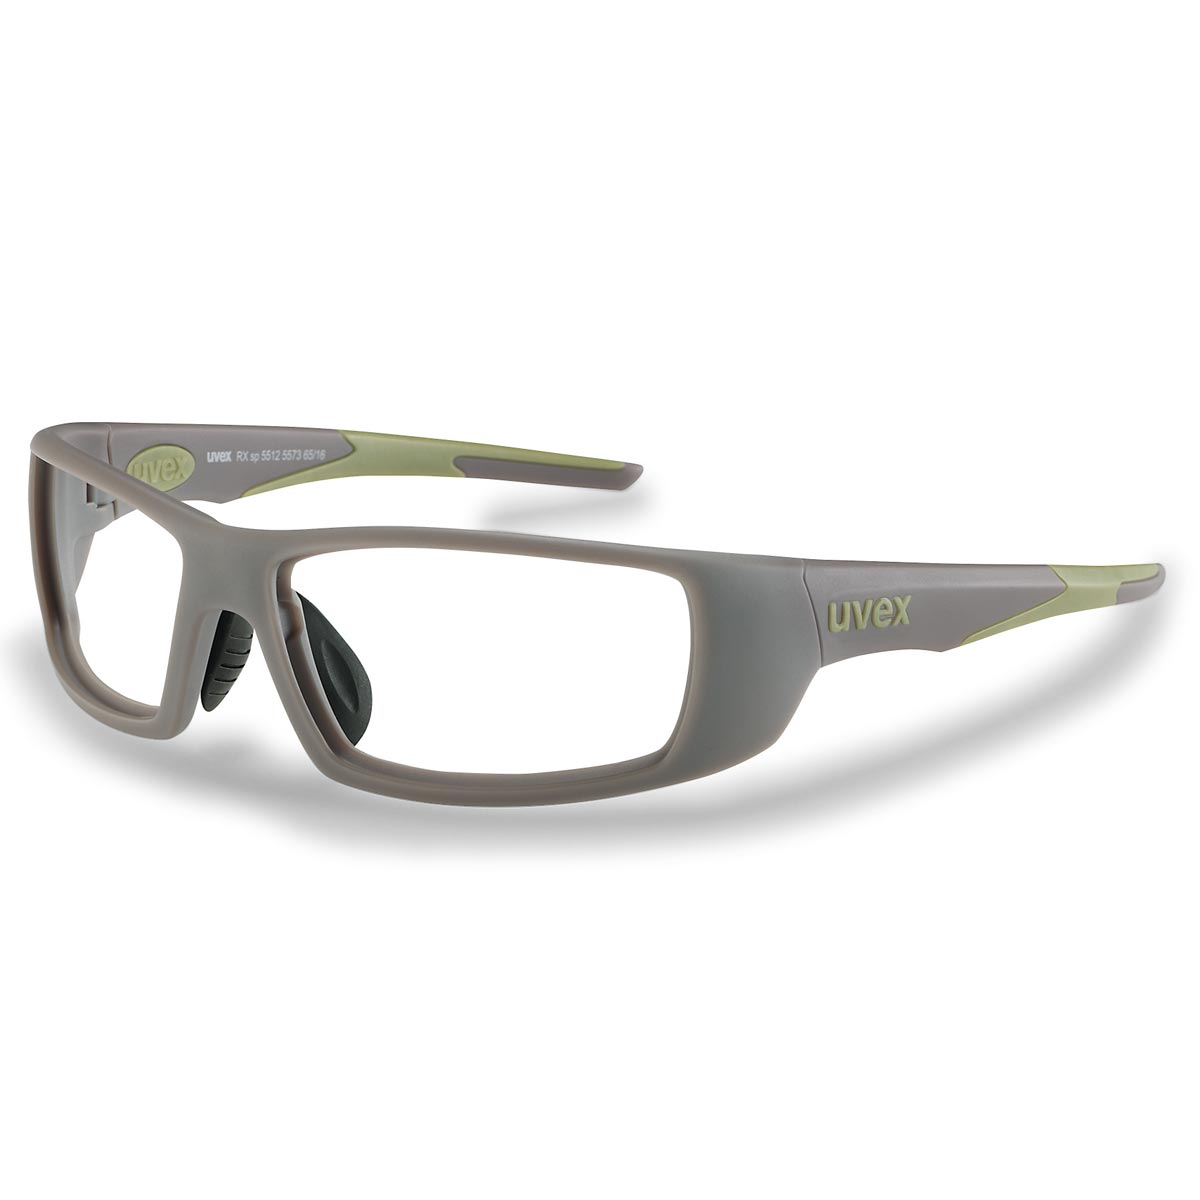 Uvex veiligheidsbril RX sp 5512 groen